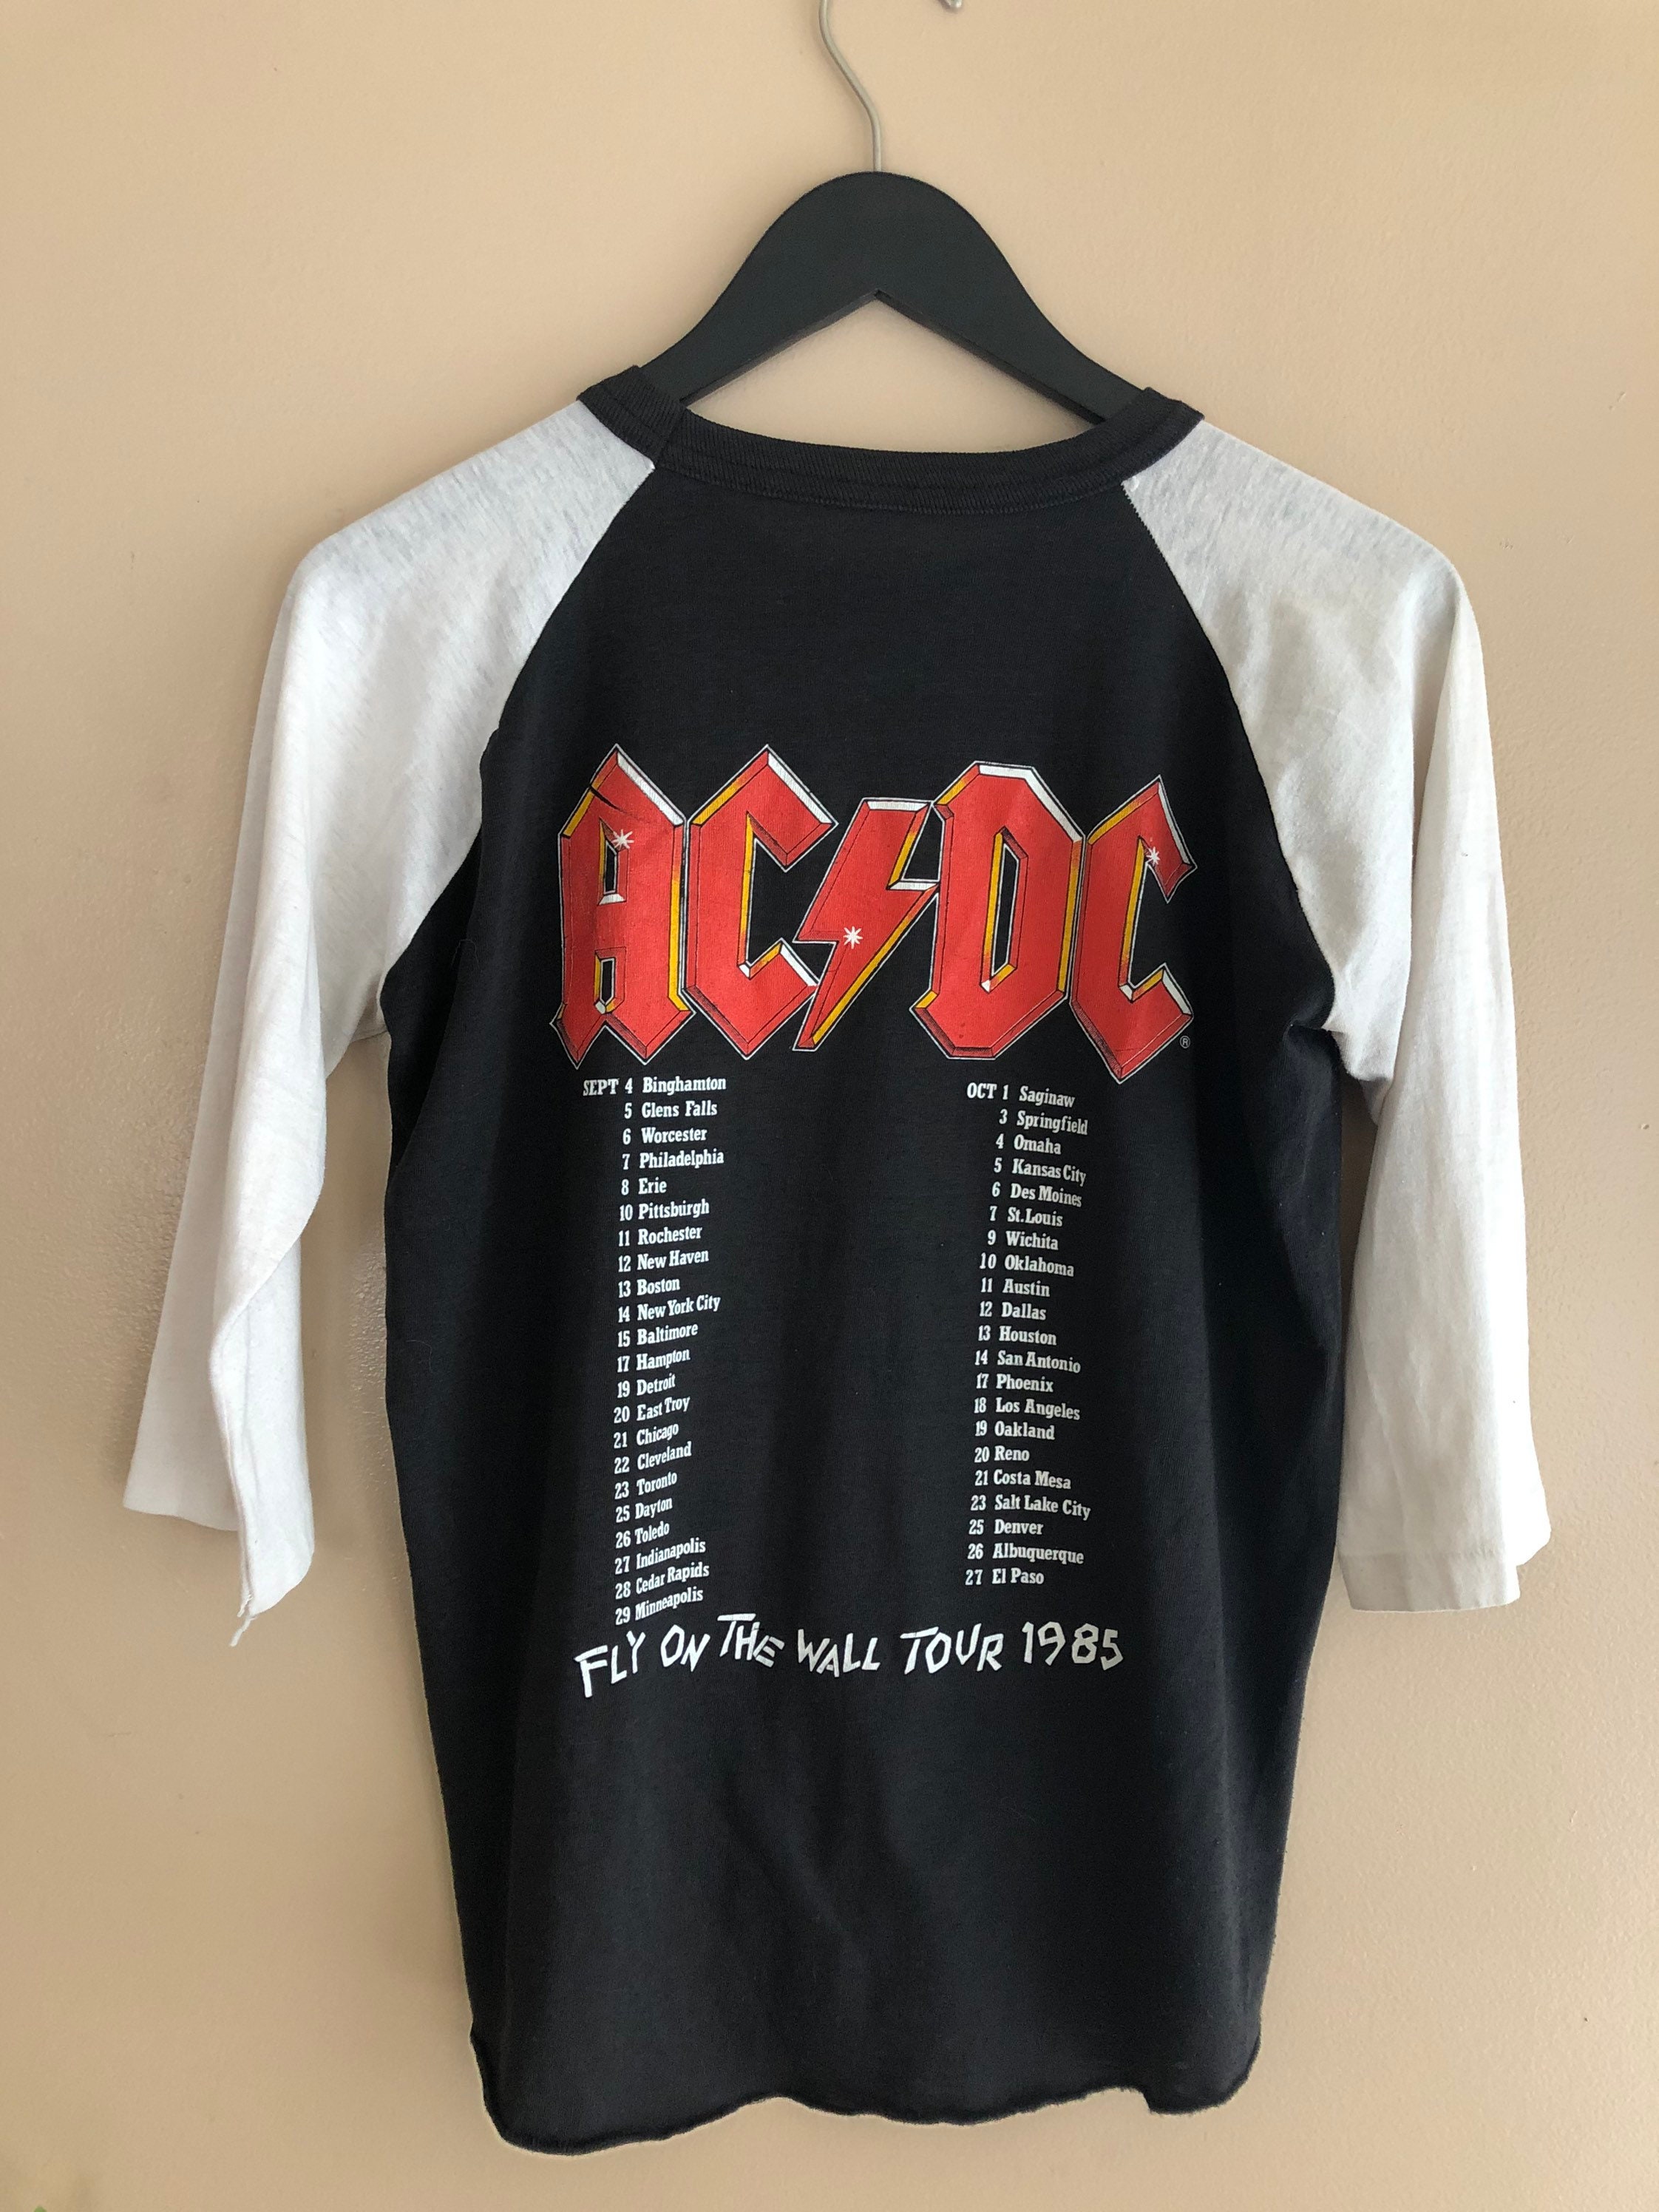 80s concert tour shirt